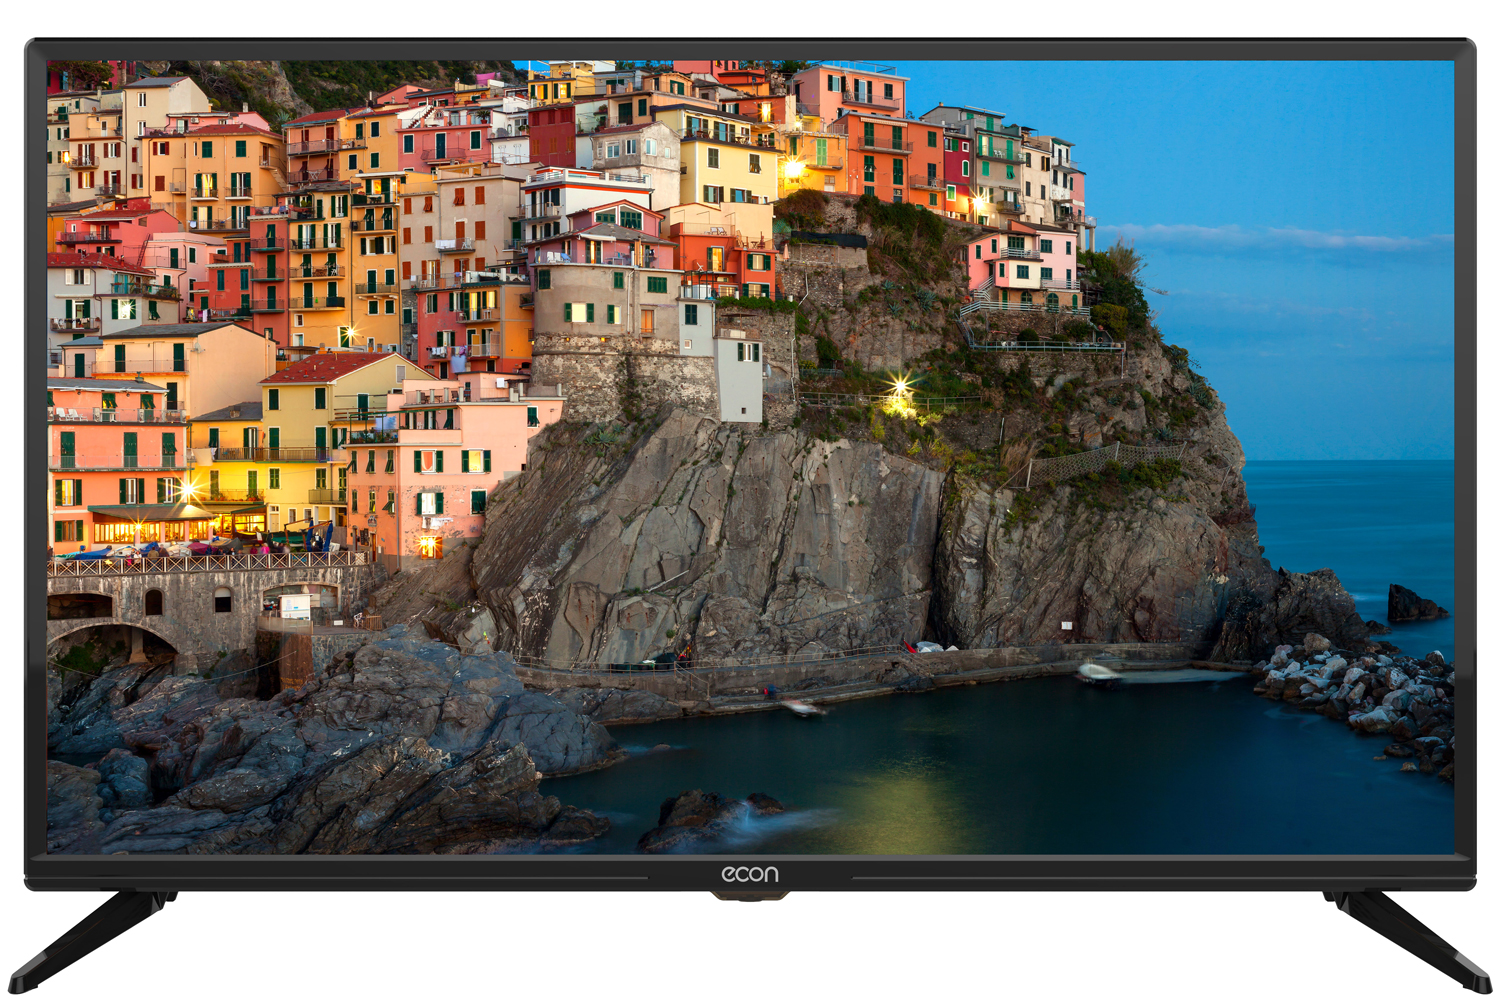 Картинка Smart телевизор ECON EX-32HS002B по разумной цене купить в интернет магазине mall.su